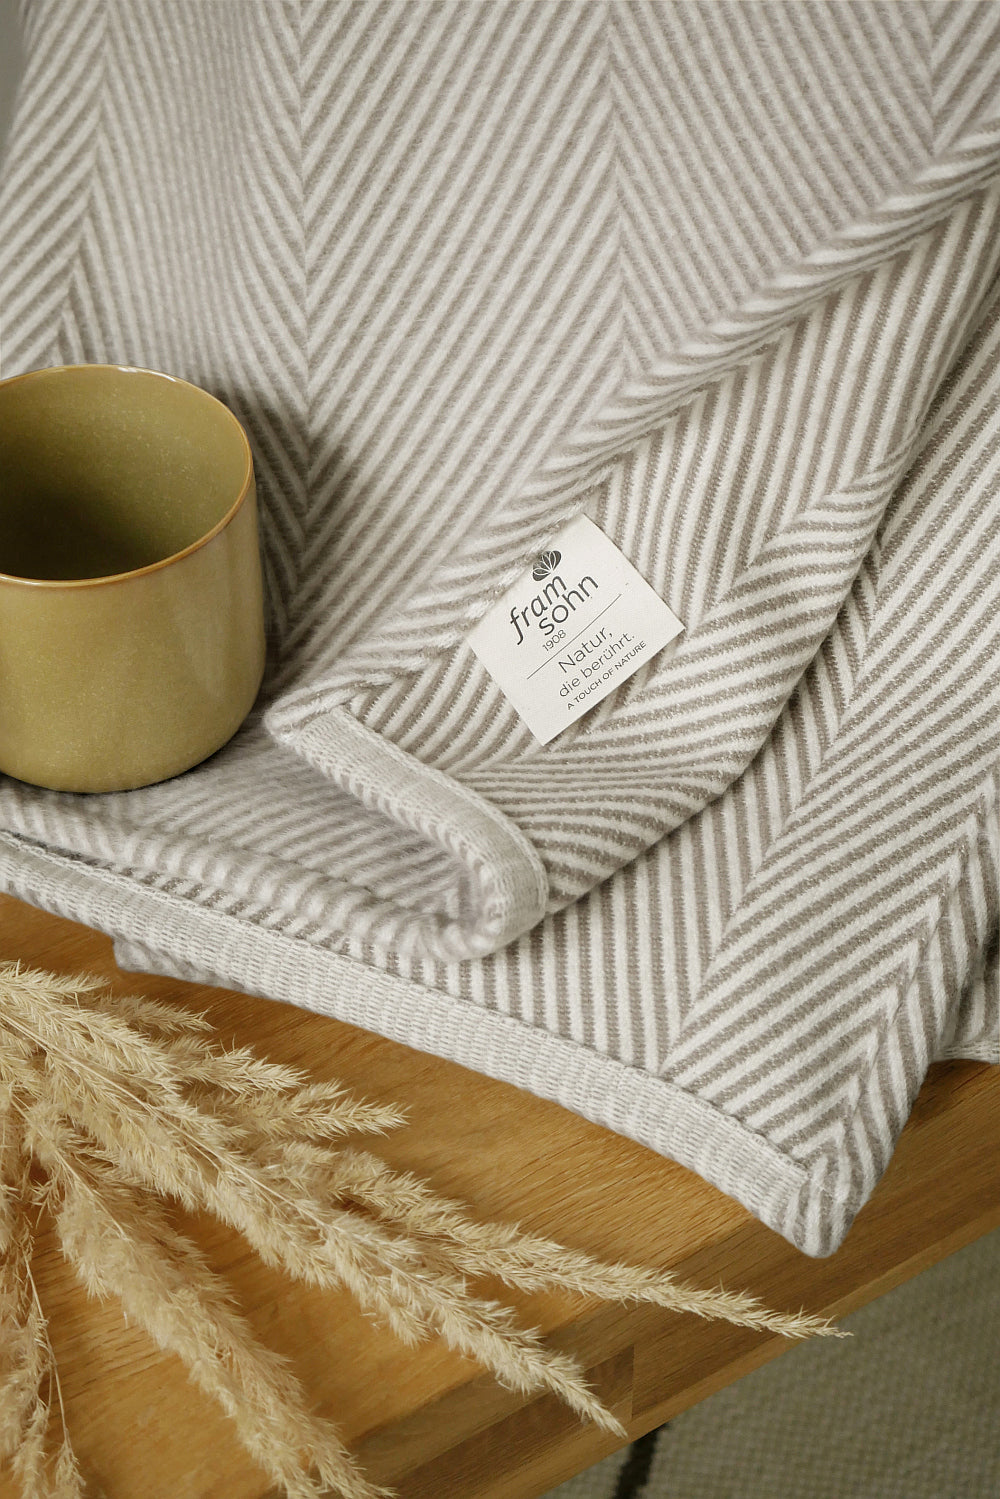 Wohndecken aus kuscheligem Baumwollflanell von Framsohn Frottier online bestellen auf dasgute-leben.at  